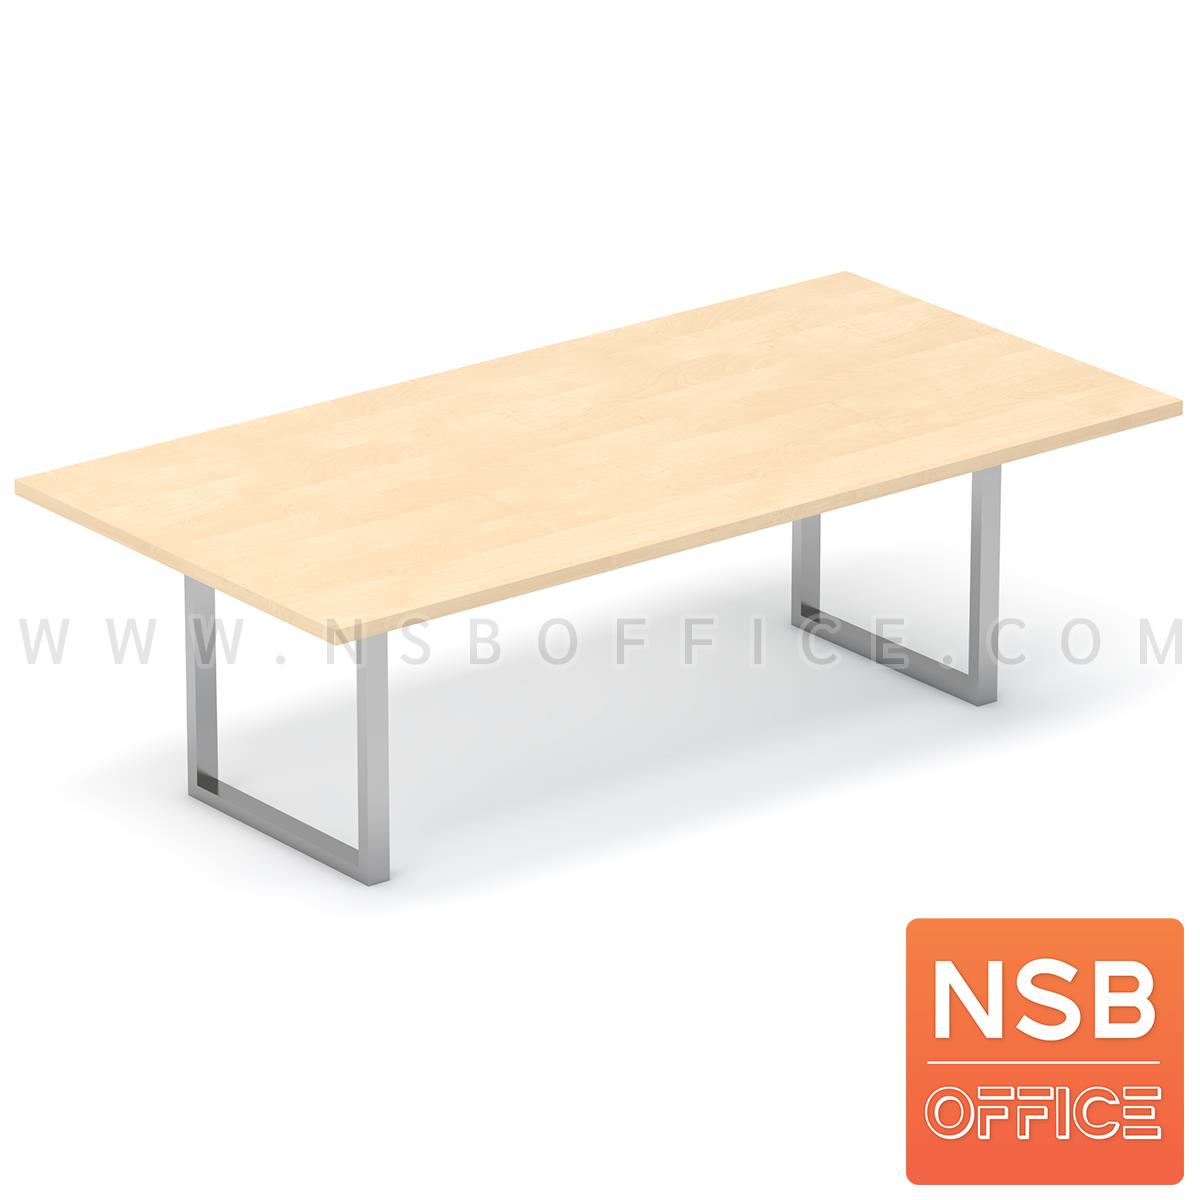 A05A248:โต๊ะประชุมทรงสีเหลี่ยม รุ่น Winstone (วินสโตน) ขนาด 200W, 240W cm ขาเหล็กเหลี่ยม